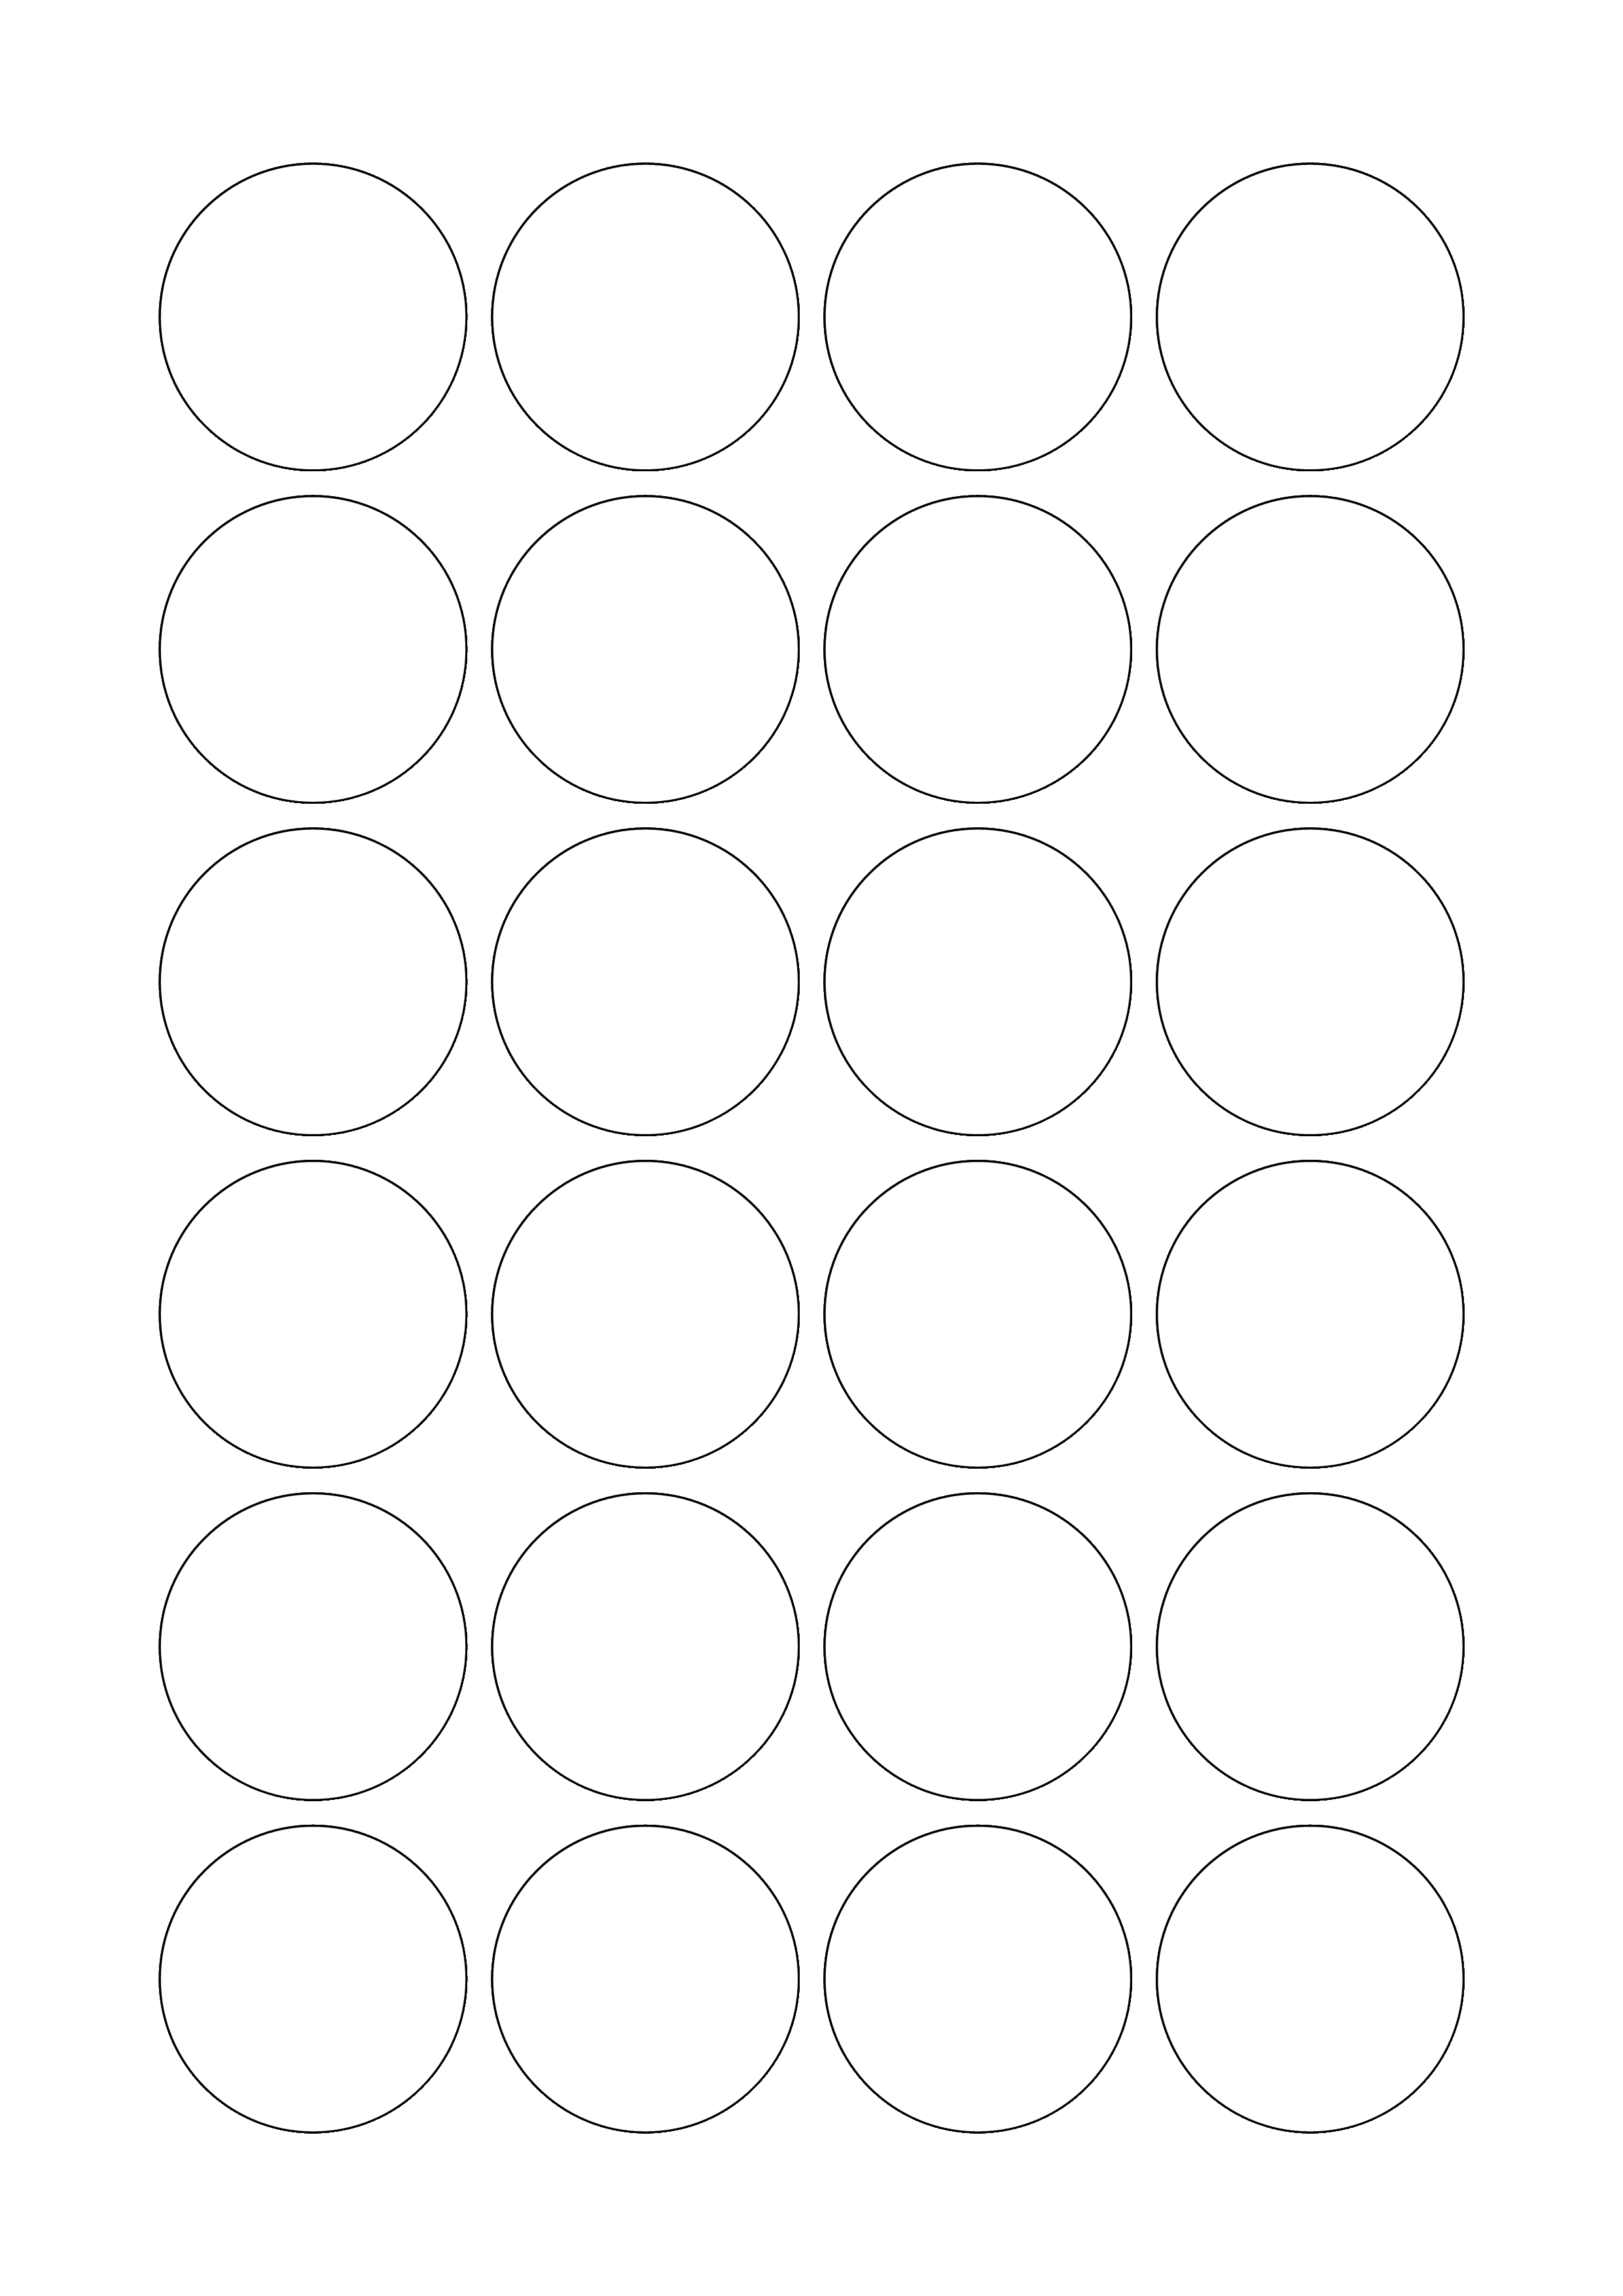 Tico Copy - Etichette adesive bianche circolari con margini diam